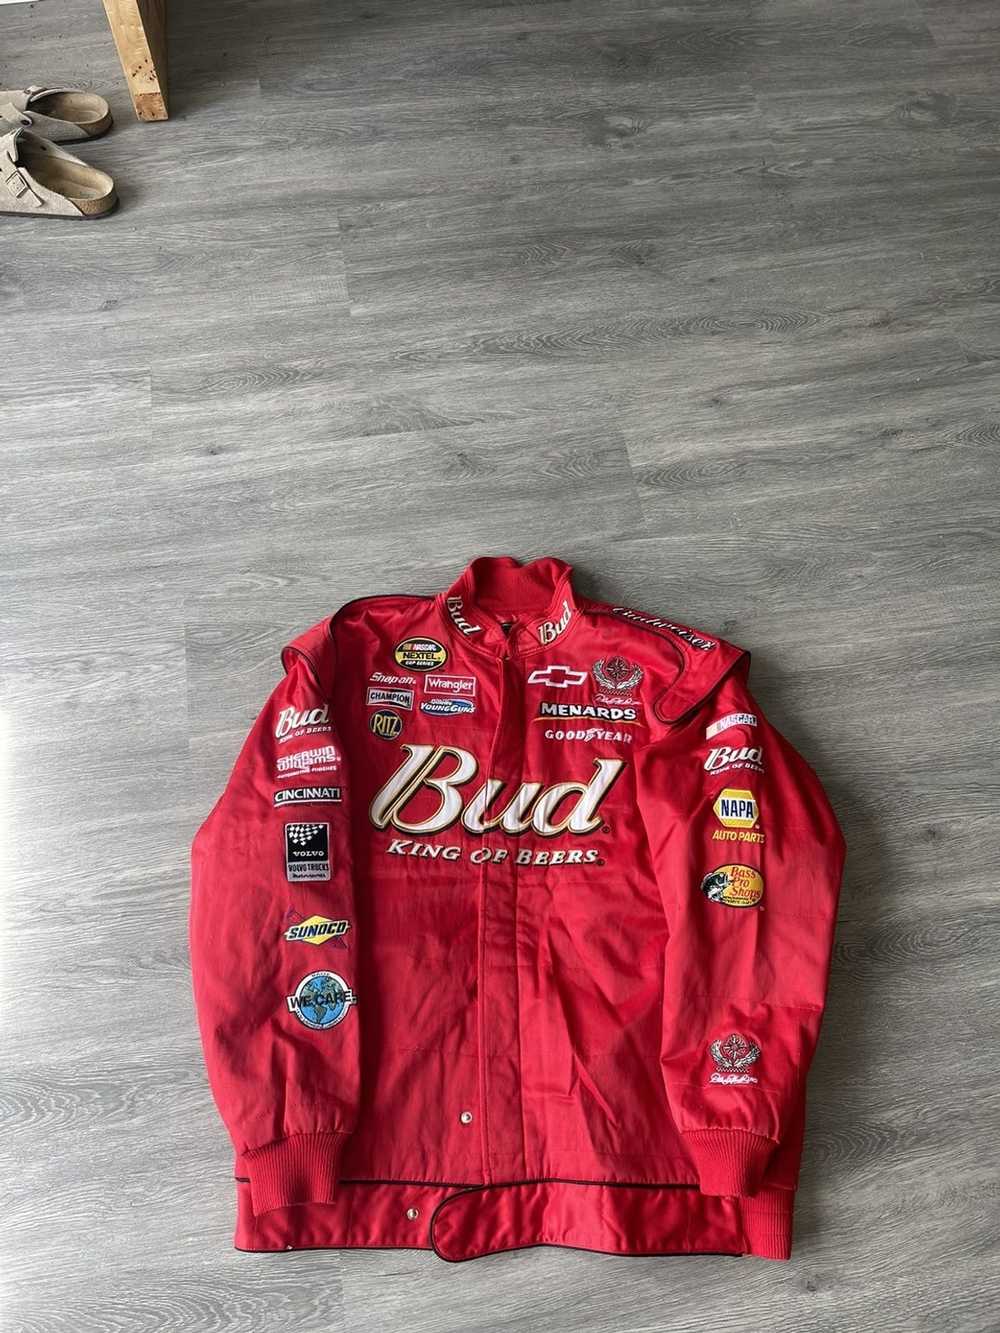 NASCAR NASCAR vintage Budweiser race jacket - Gem